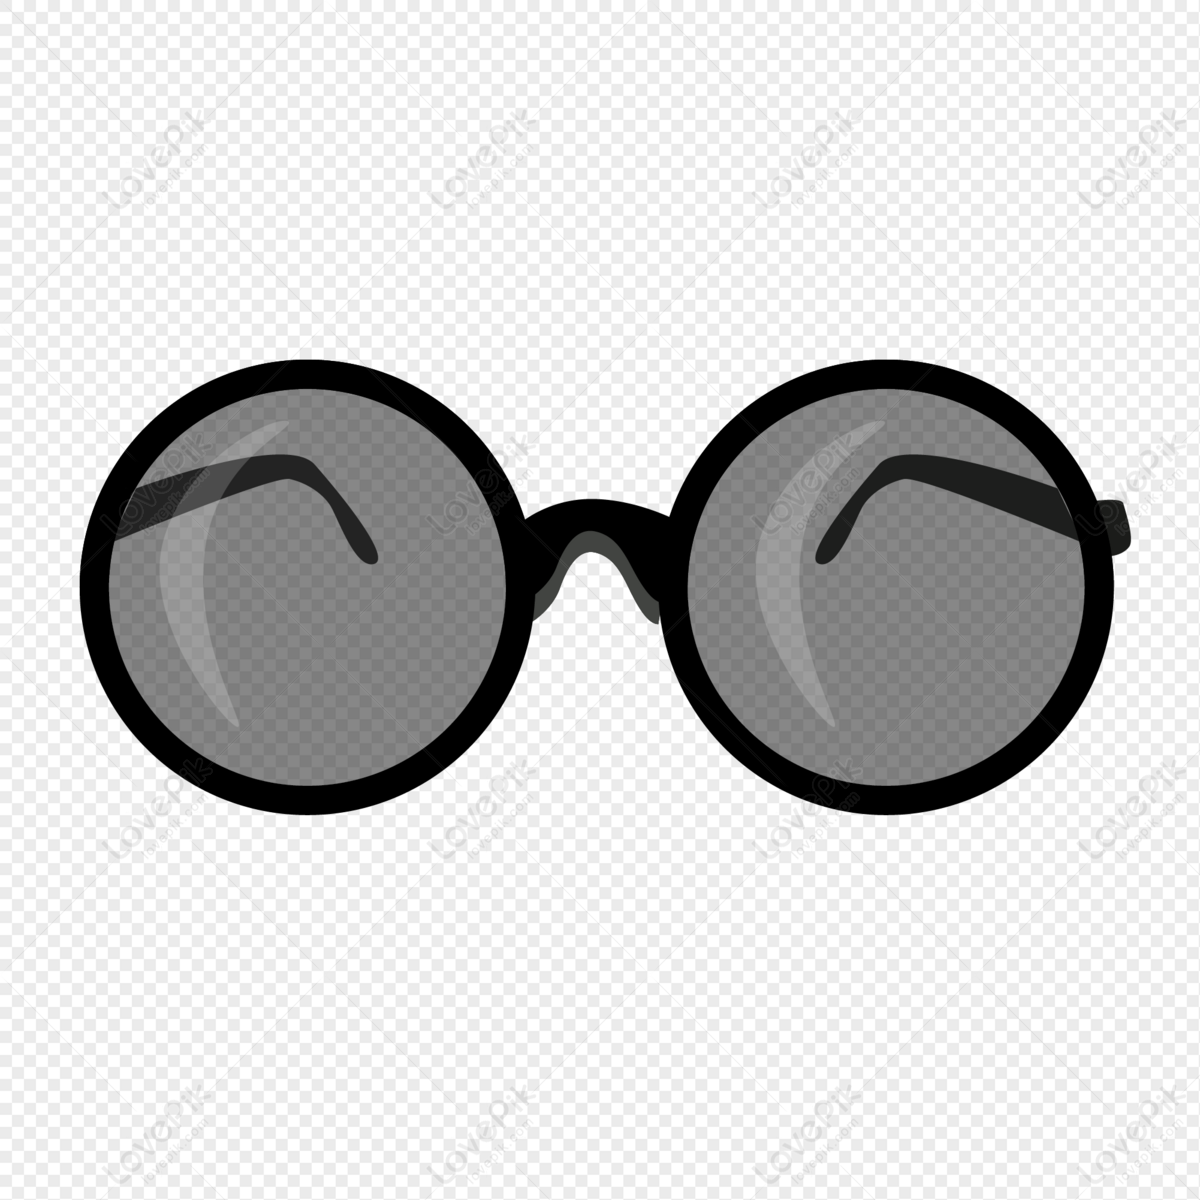 Với những chiếc kính râm đen, bạn sẽ thêm phần bí ẩn và lịch lãm cho phong cách của mình. Hãy chọn cho mình một chiếc kính râm đen phù hợp để nâng cao thêm sự quyến rũ của bạn.